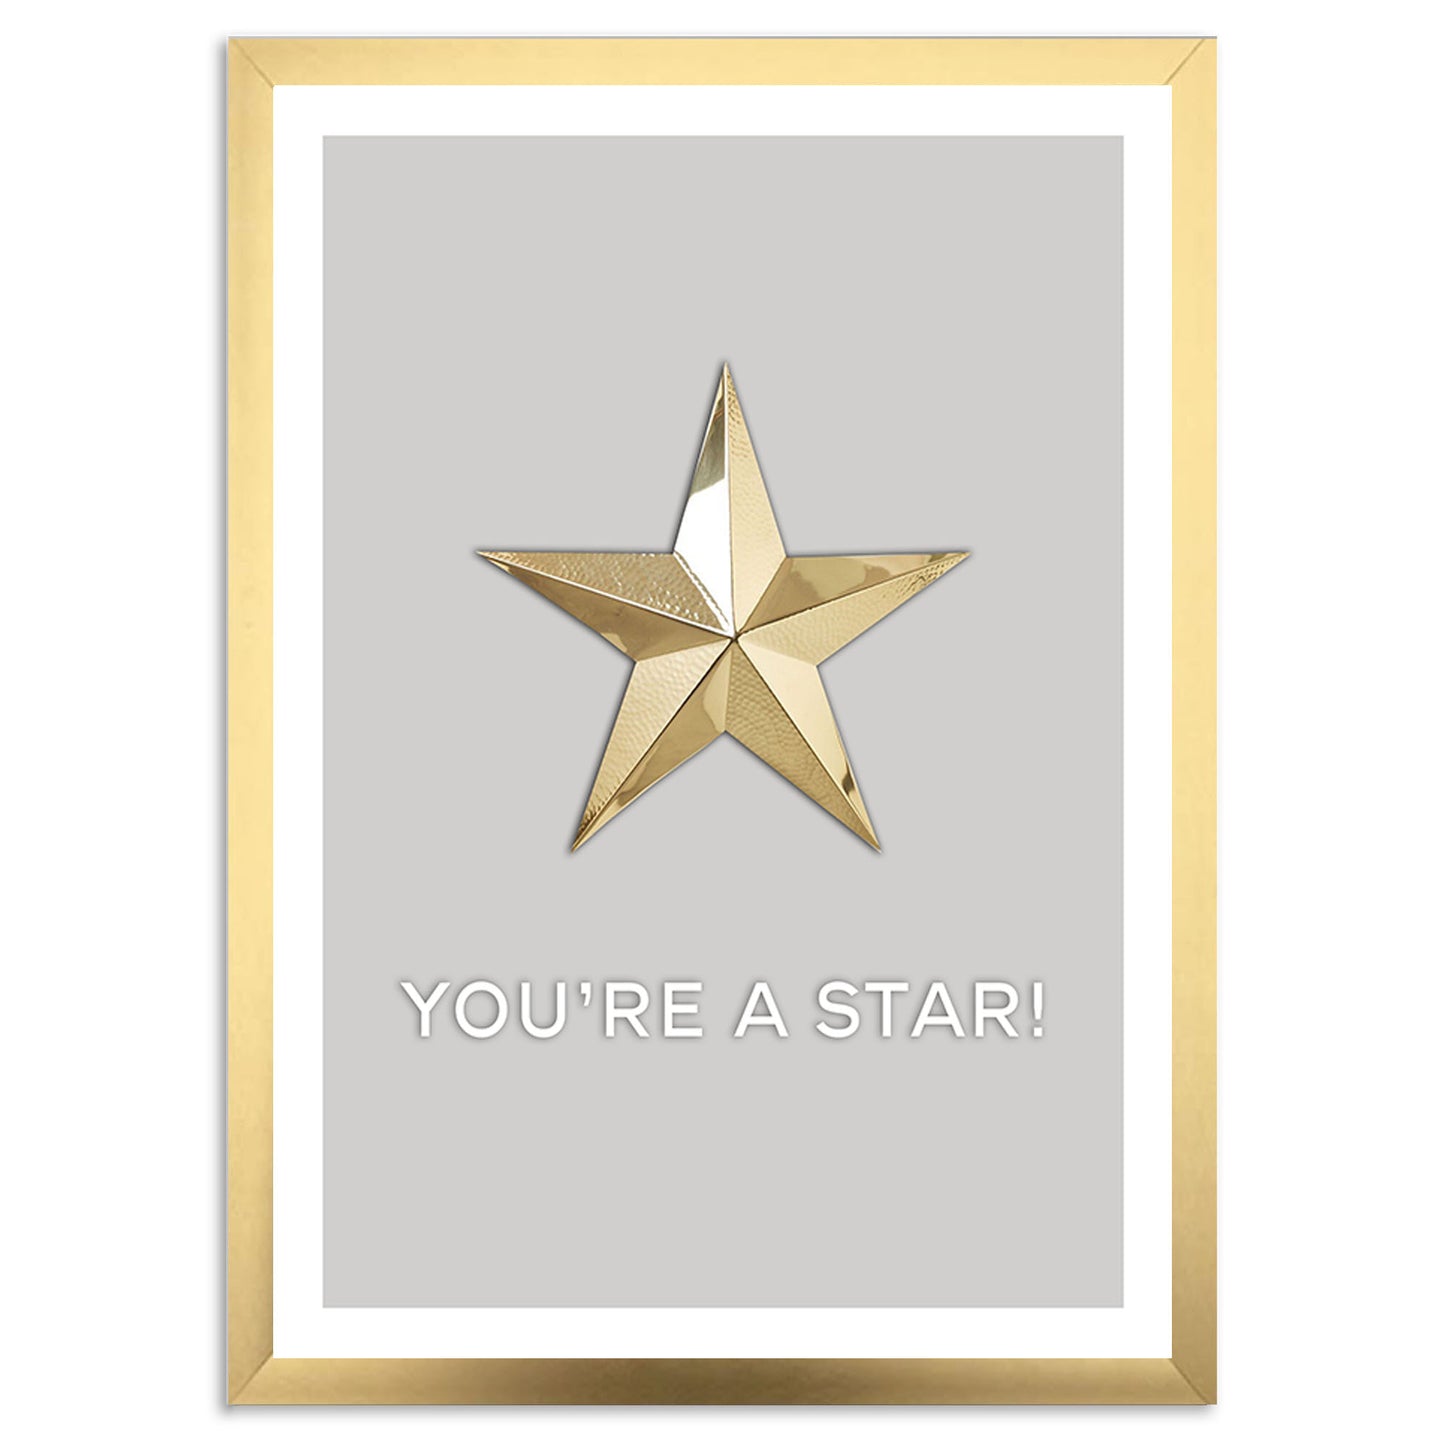 Du er en stjerne! Kunsttrykk